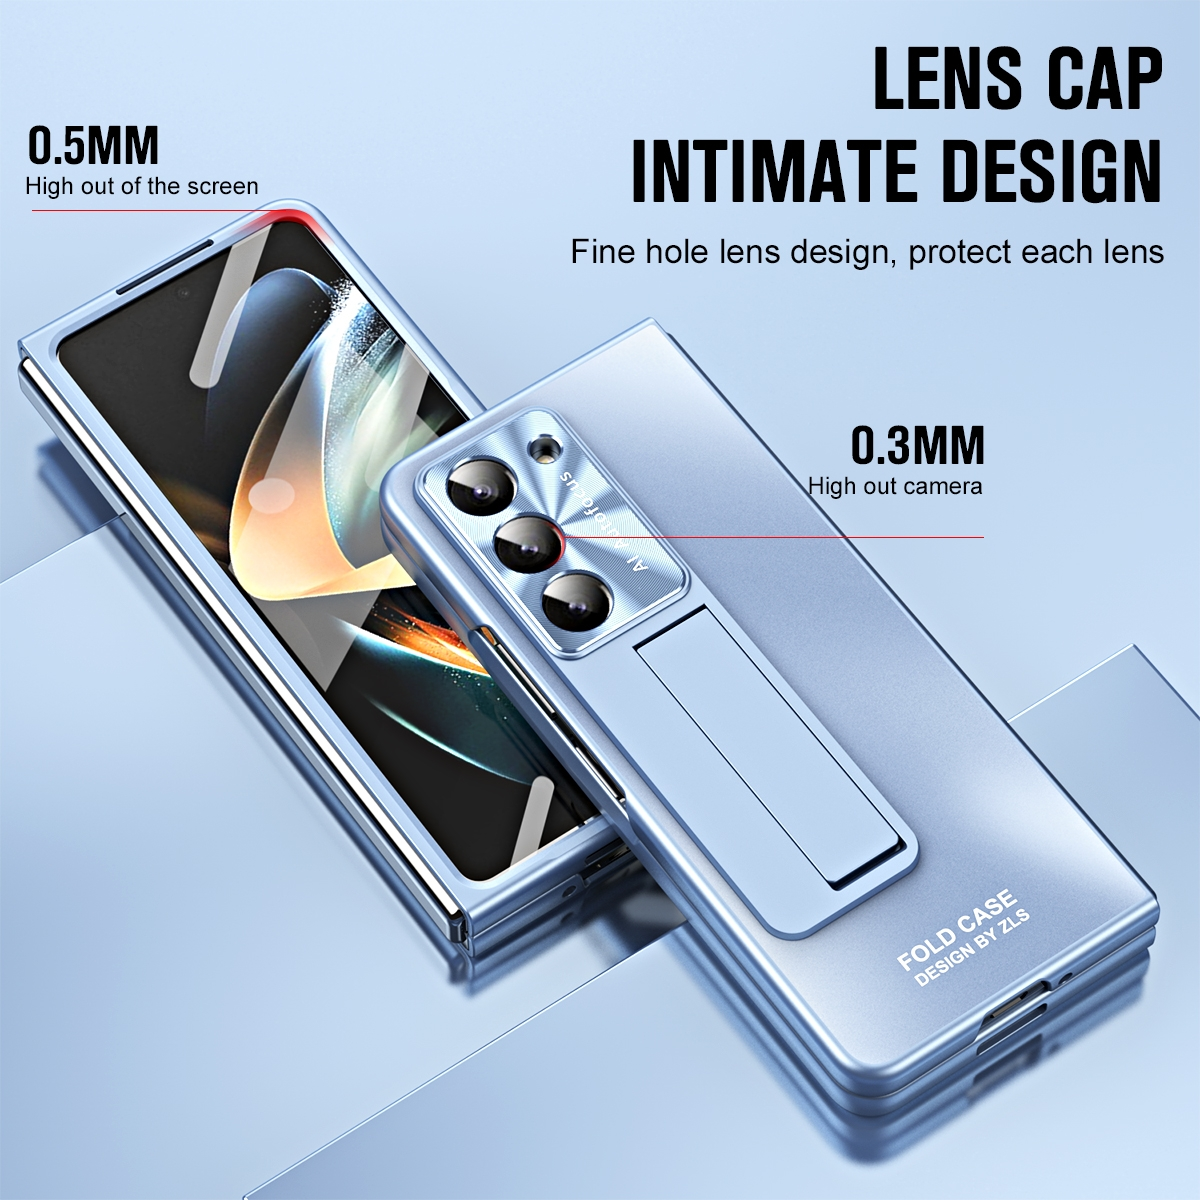 WIGENTO Design Samsung, mit Premium Galaxy 5G, Standhalterung, Blau Hülle Fold5 Backcover, Z